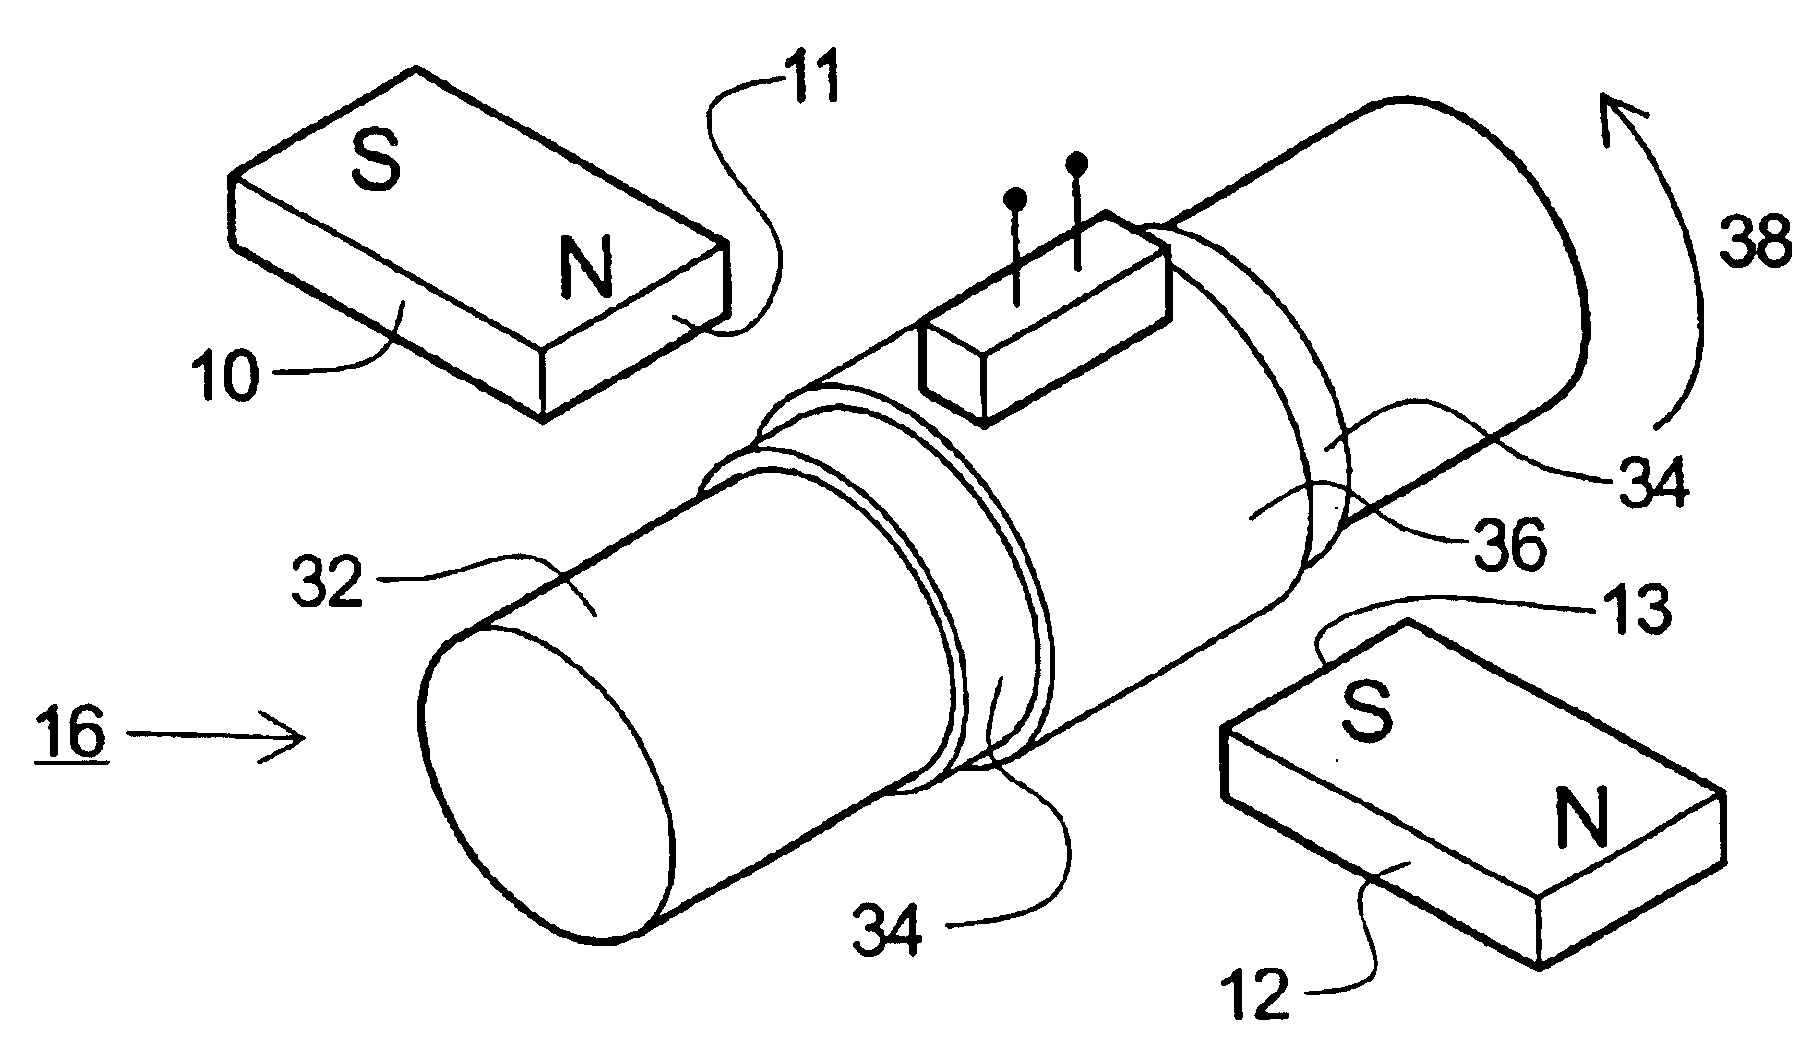 Torque sensing apparatus and method